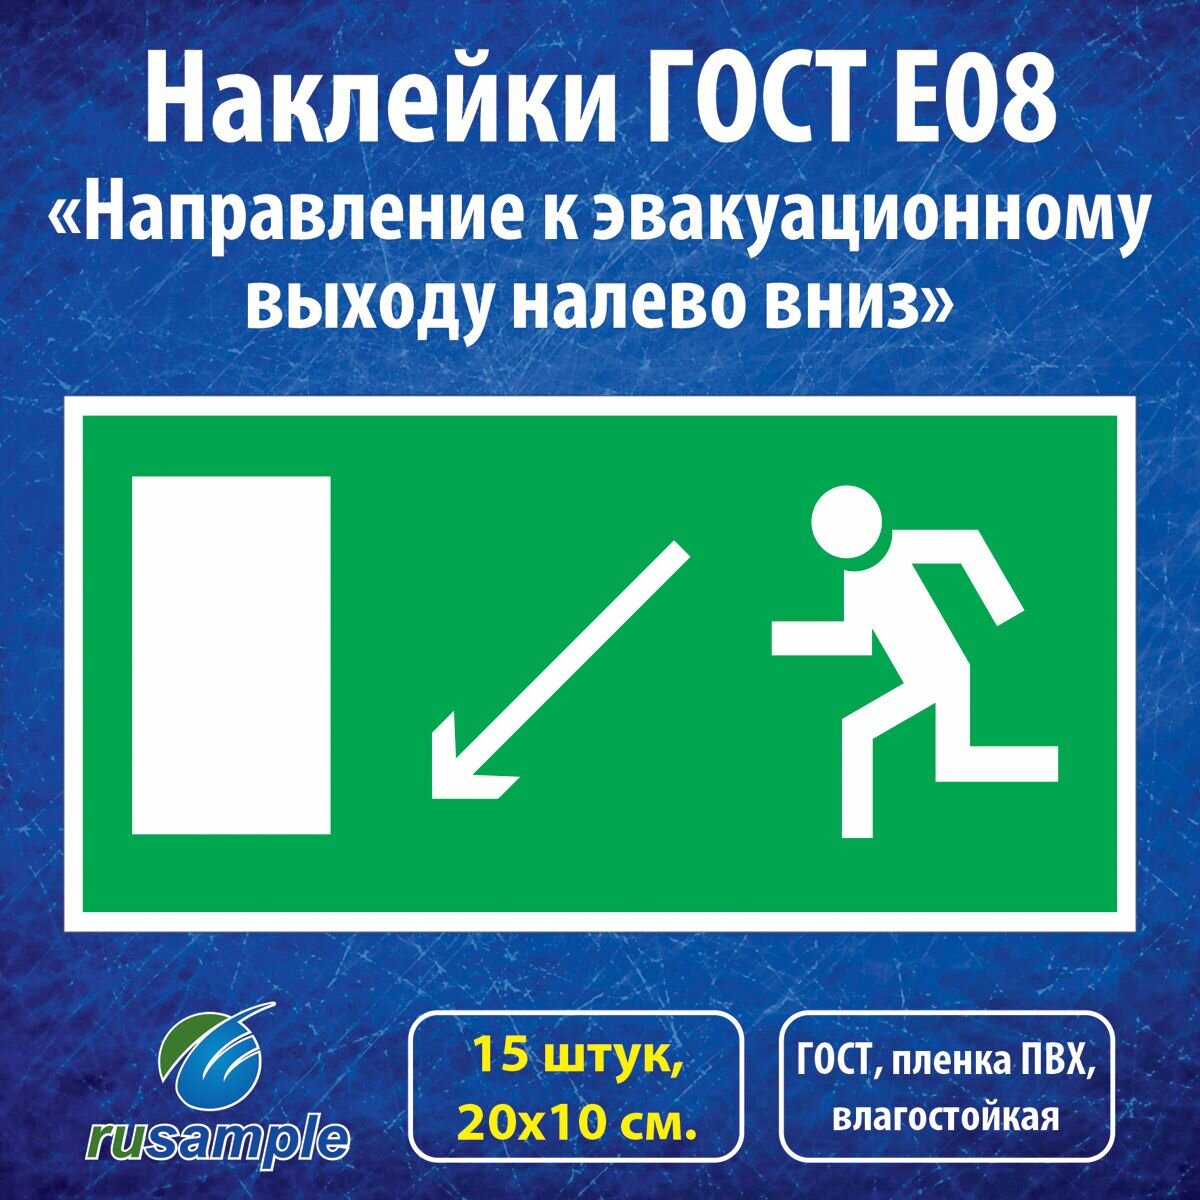 Наклейки E08 "Направление к эвакуационному выходу налево вниз", ГОСТ 20х10 см, 15 штук